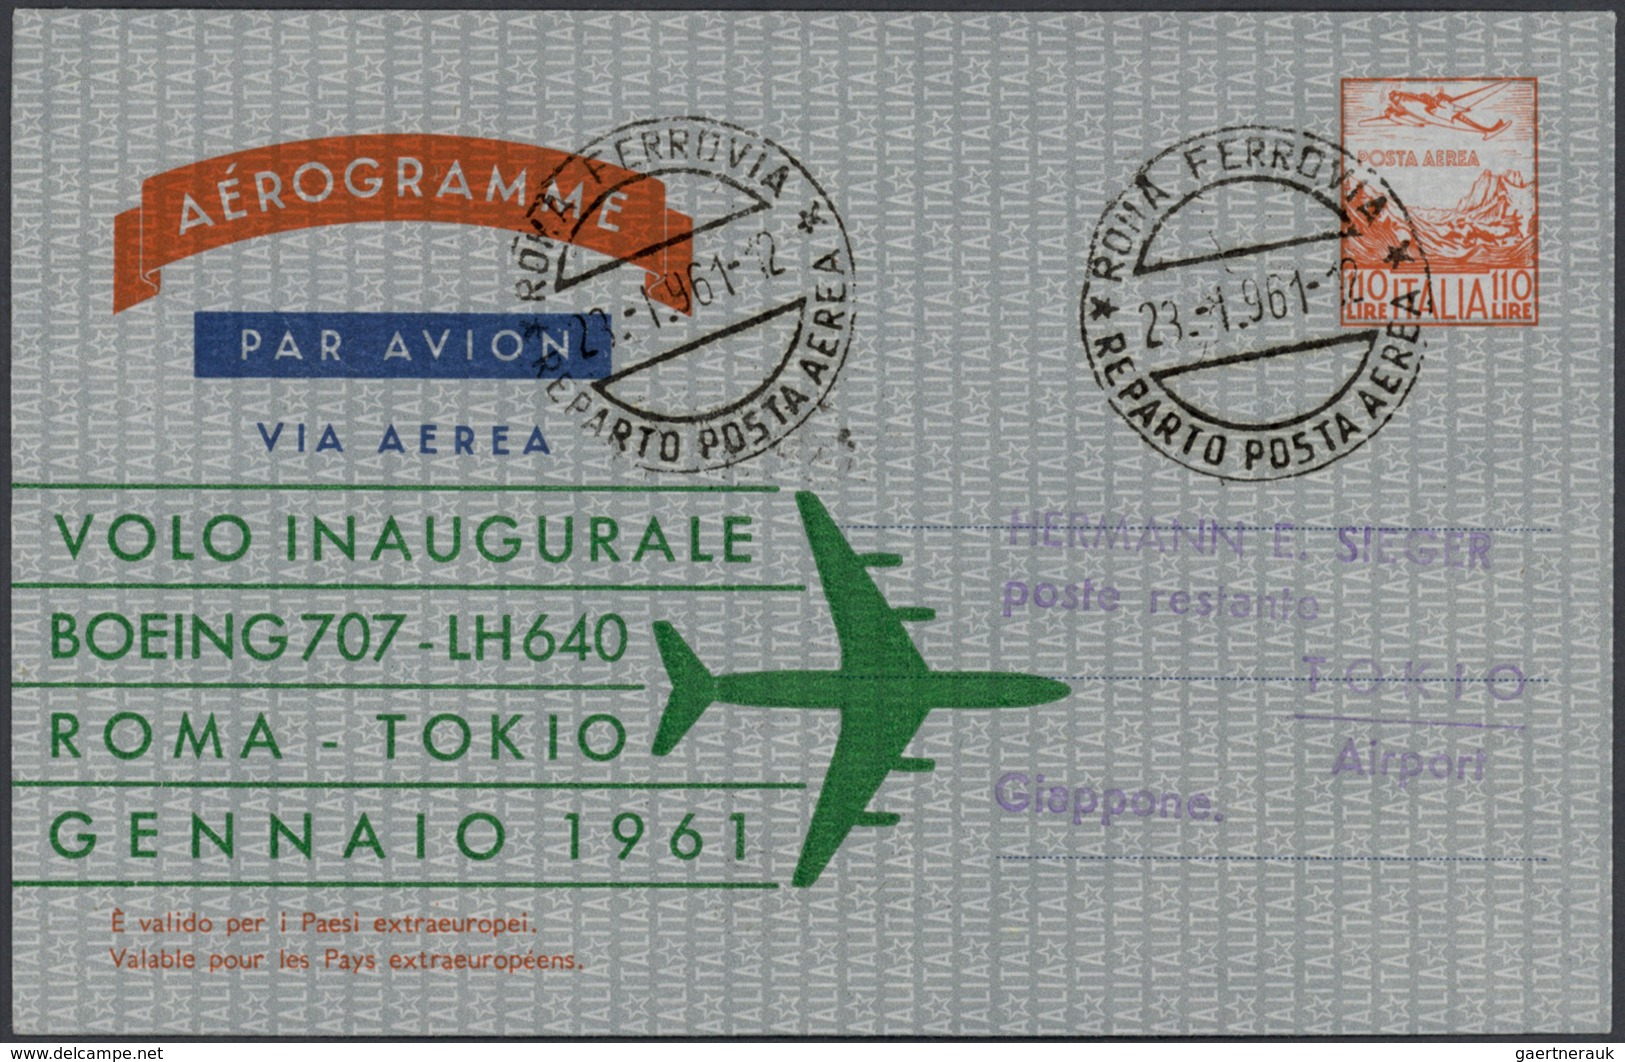 24811 Flugpost Deutschland: 1955/1963, Lufthansa-Erstflüge, Sammlung von ca. 310 augenscheinlich nur versc